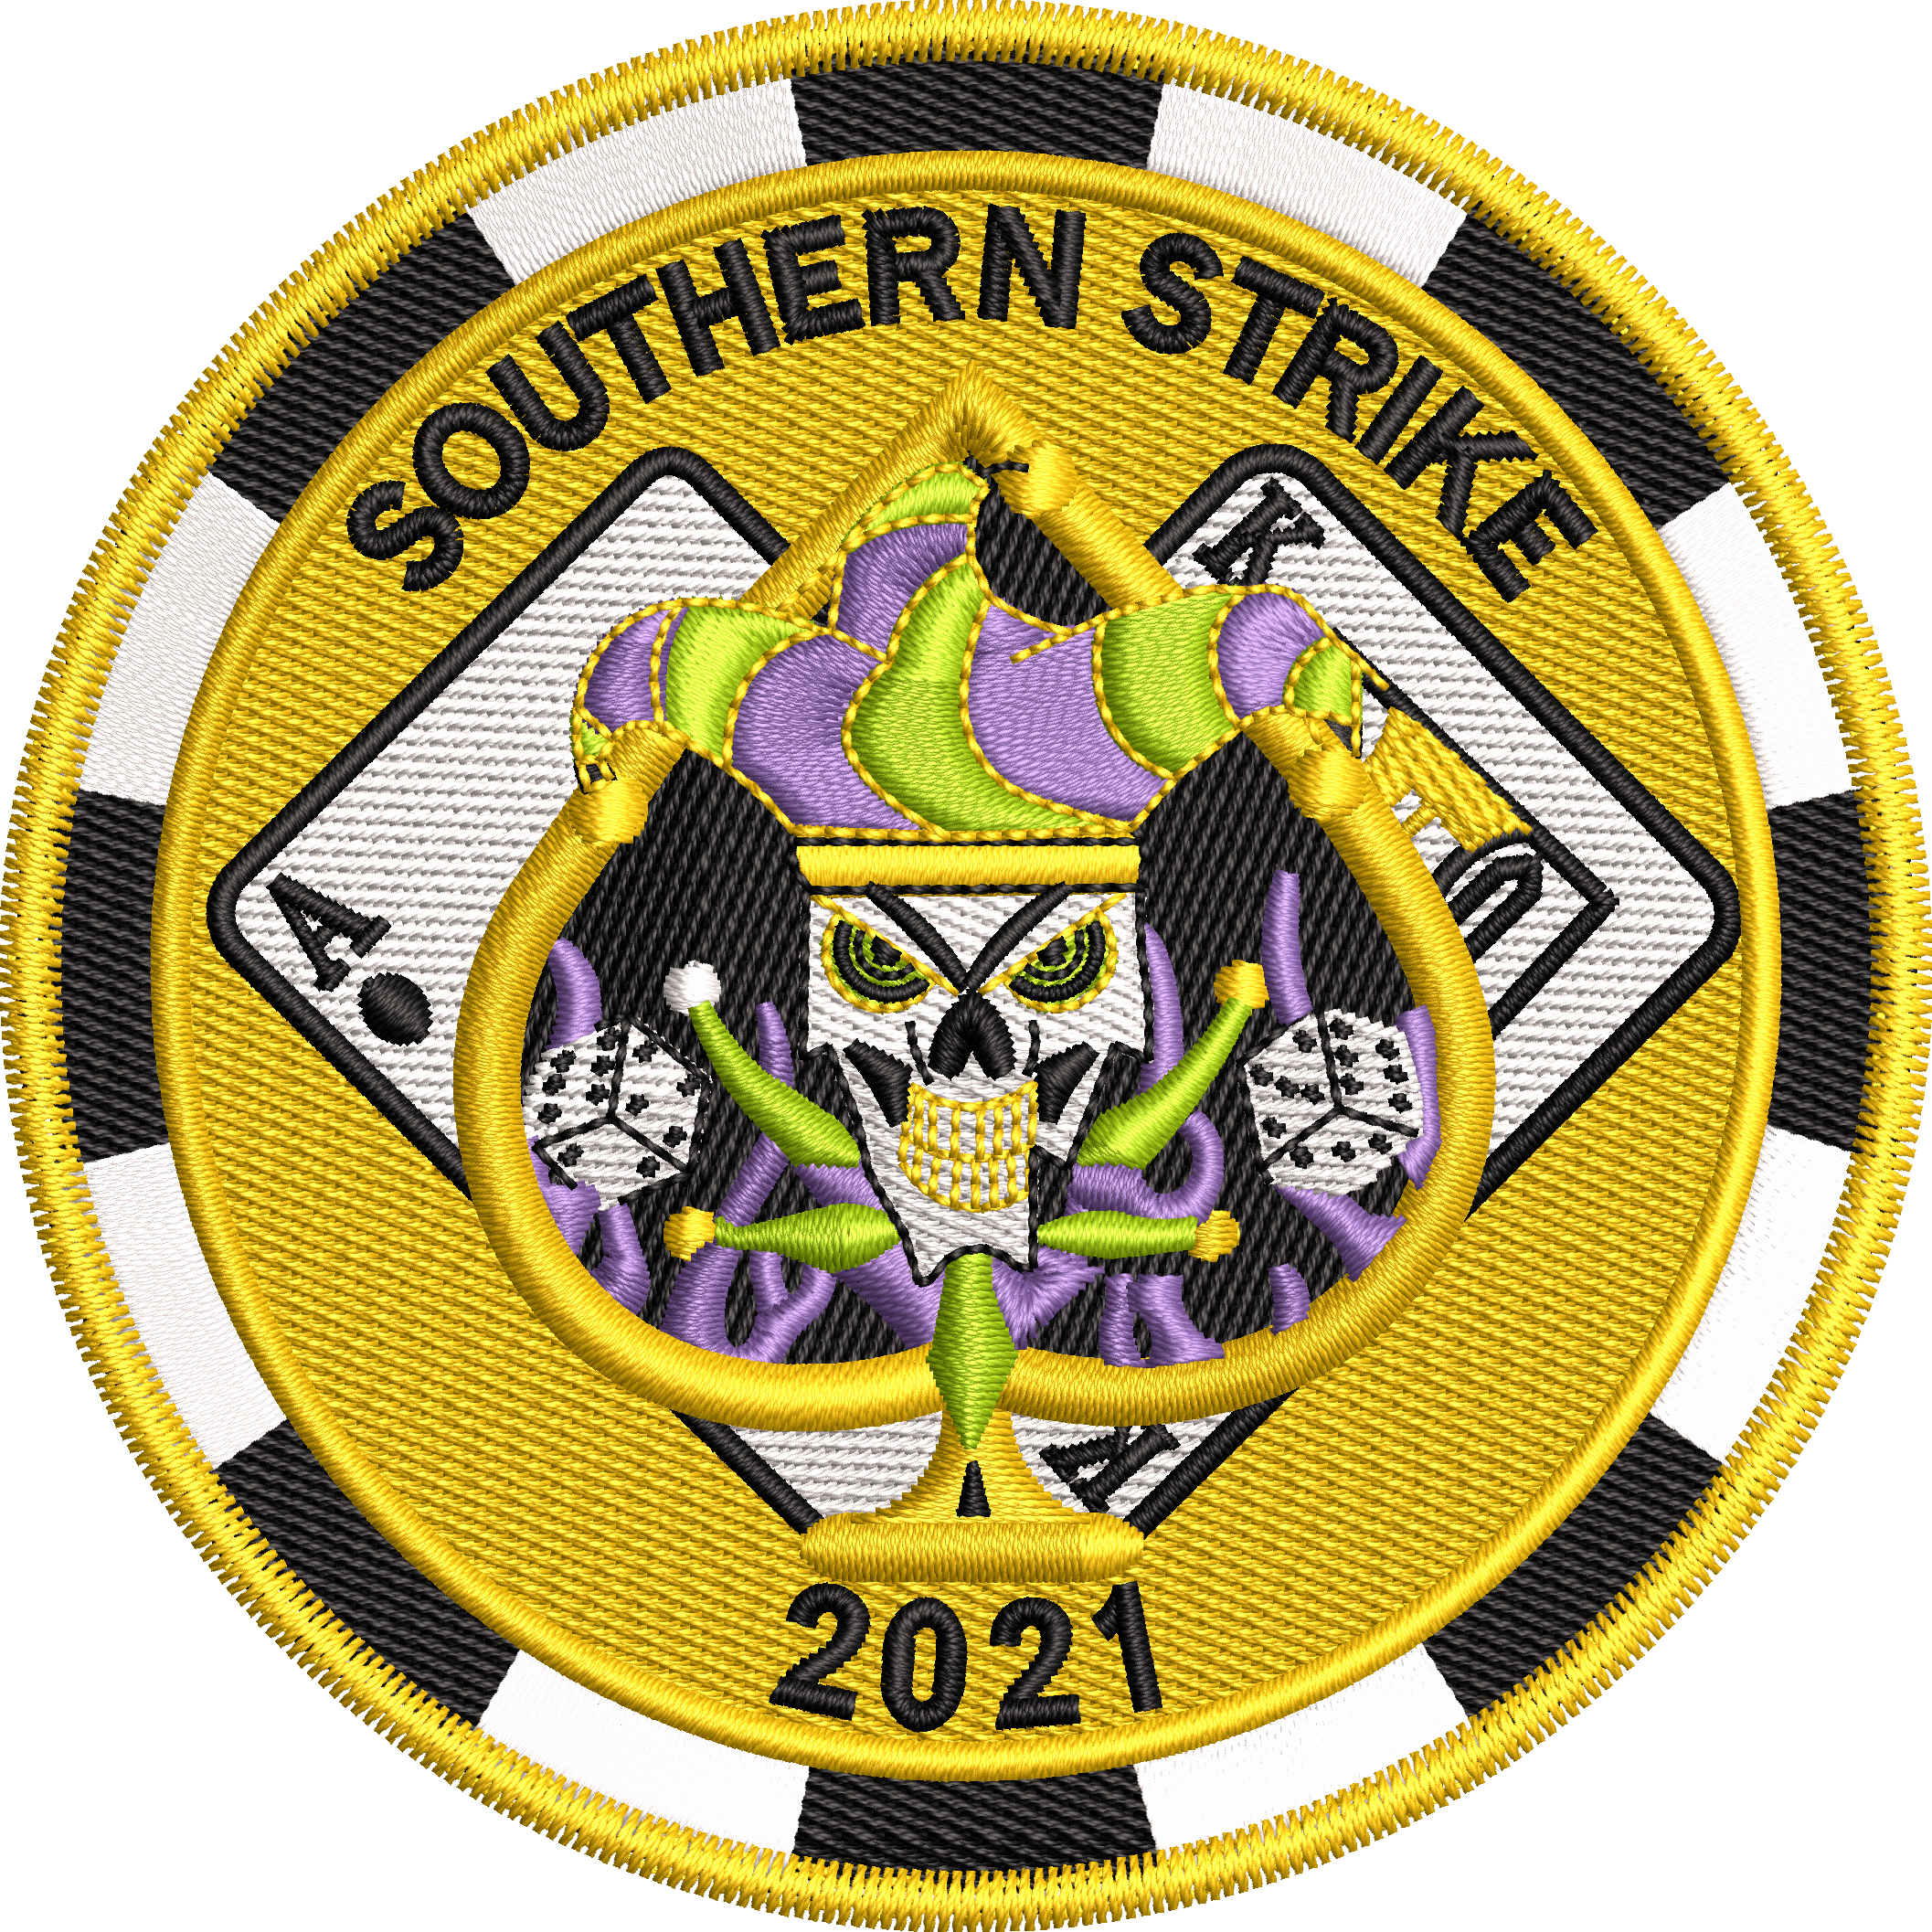 Southern Strike 2021